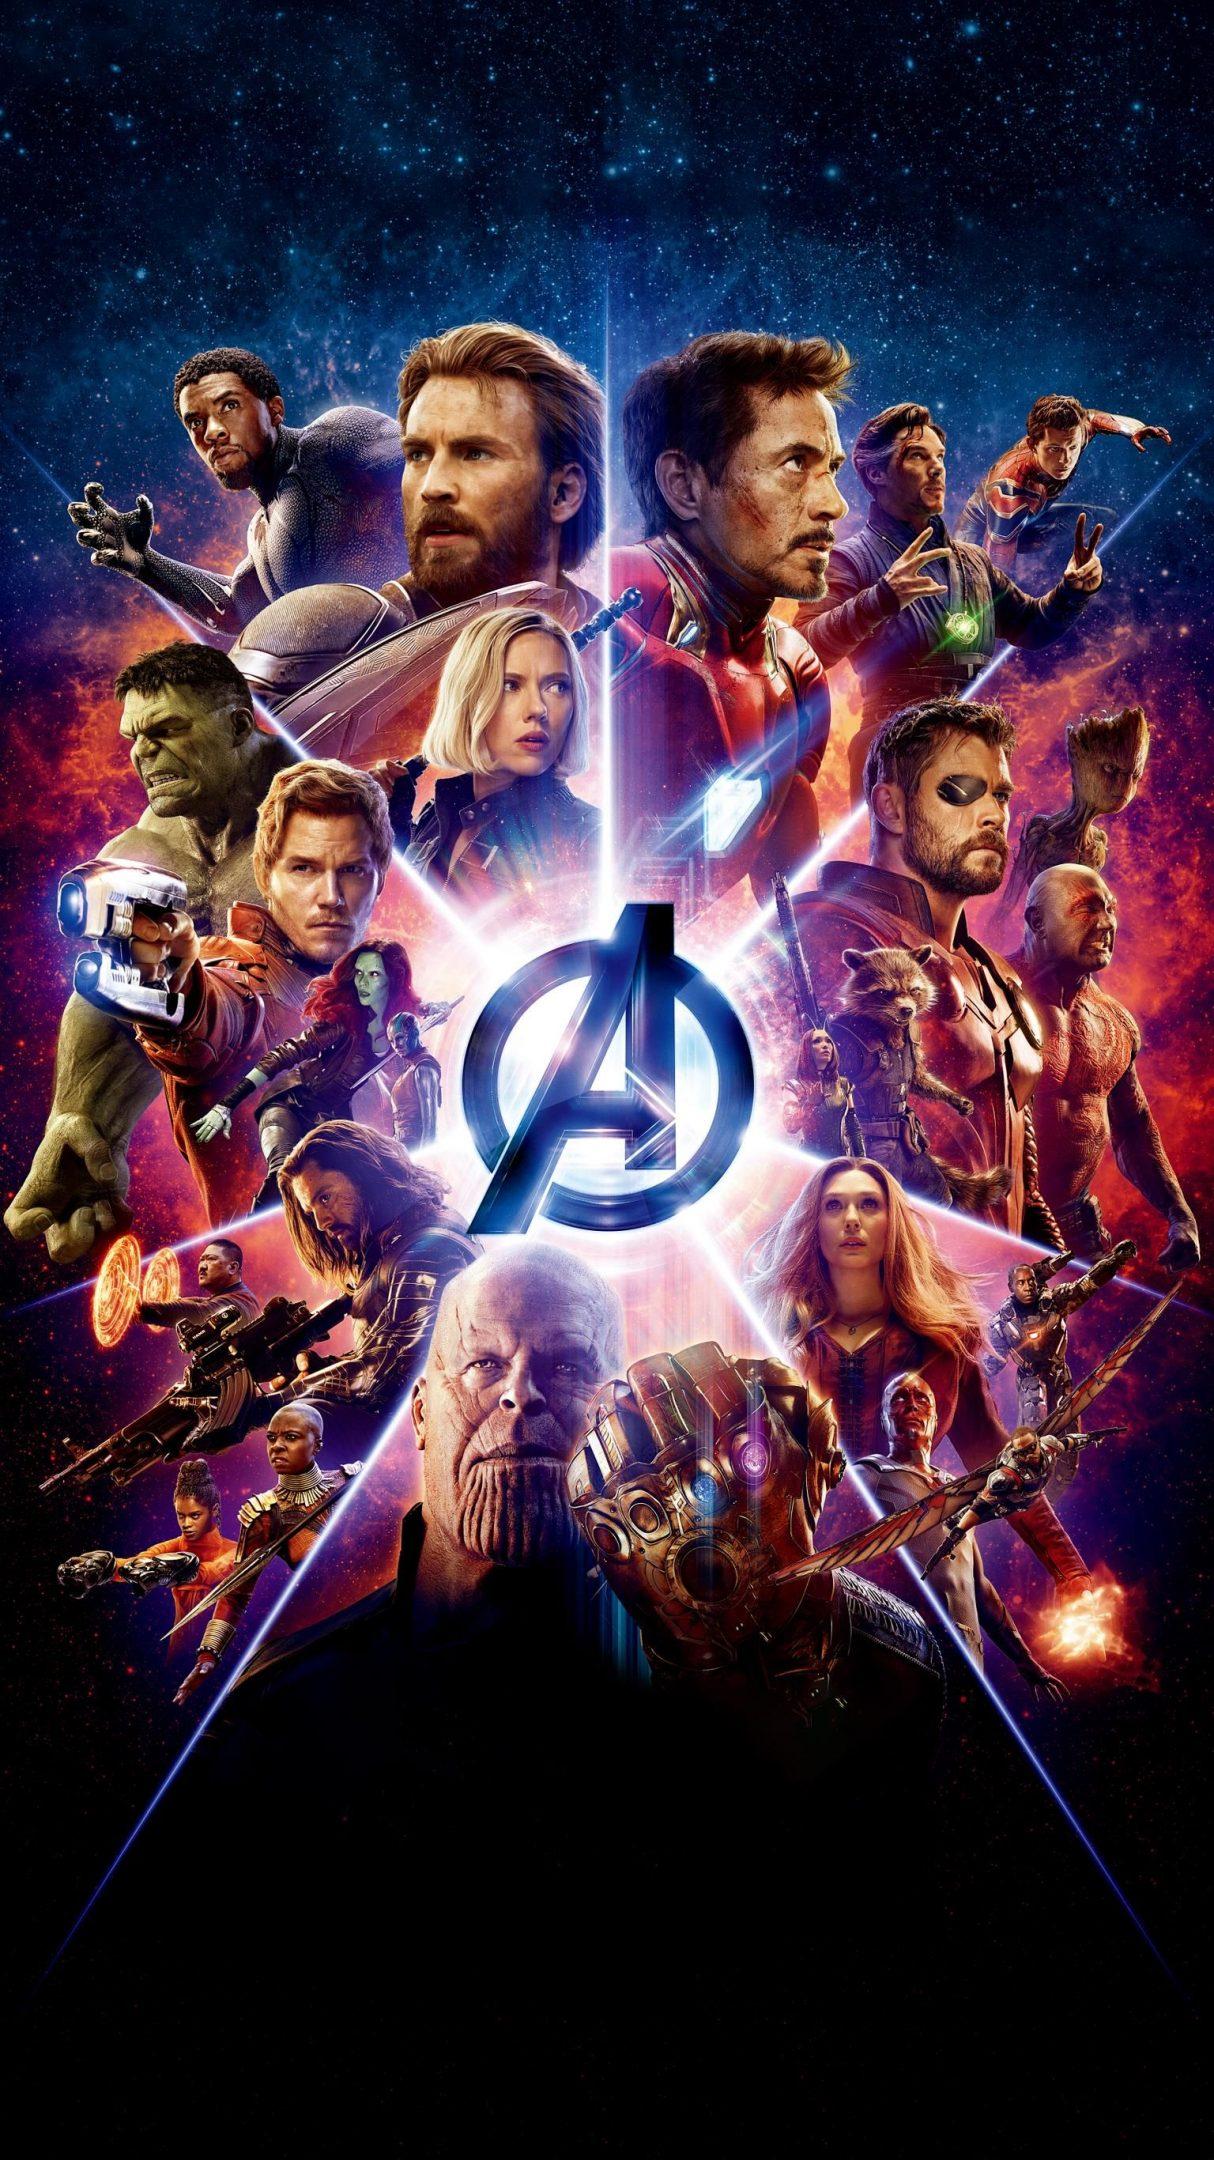 Marvel's Avengers: Endgame Wallpapers - Wallpaper Cave